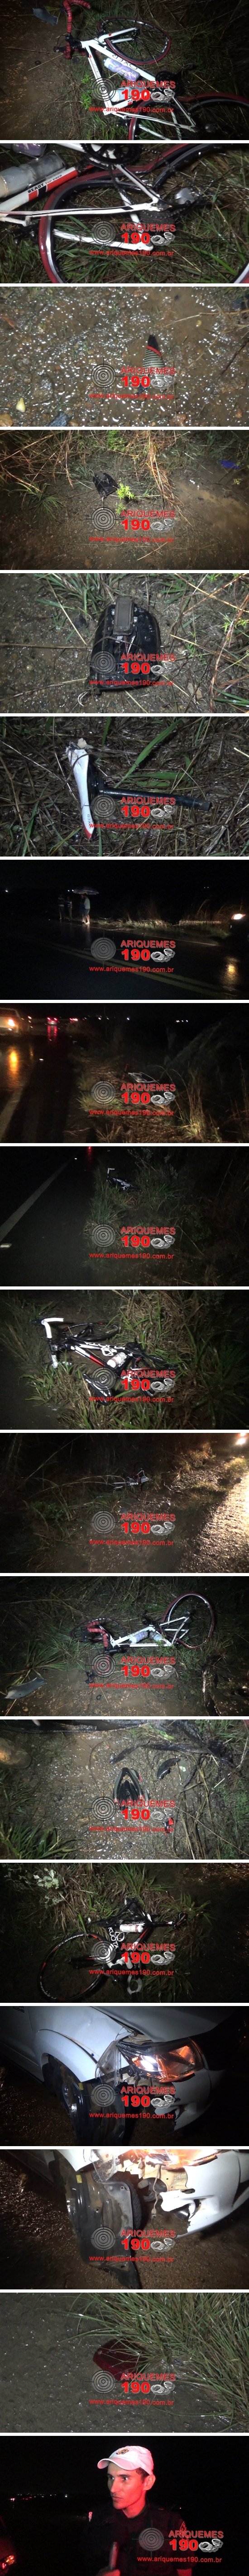 Ciclistas de Ariquemes sofrem acidente (Foto: Ariquemes 190)